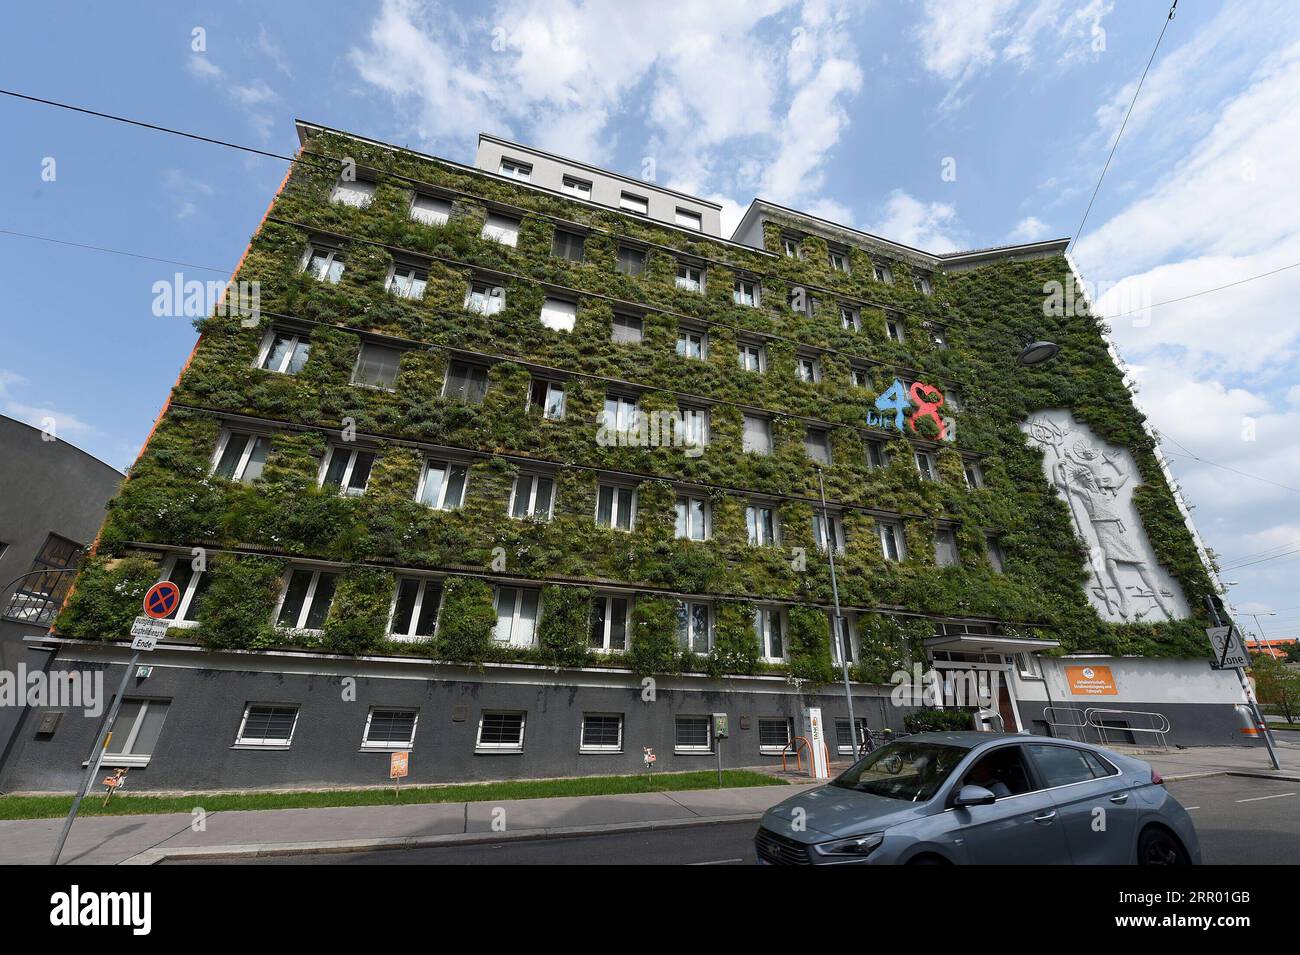 200722 -- WIEN, 22. Juli 2020 -- Foto vom 22. Juli 2020 zeigt das Äußere des MA48-Hauptsitzes in Wien, Österreich. Die Fassaden des Hauptquartiers der MA 48 waren mit grünen Pflanzen gesäumt, die sich positiv auf das Mikroklima, den Schutz der Bausubstanz vor treibendem Regen und Schmutzablagerungen, den Lärmschutz und die Kühlleistung auswirkten. ÖSTERREICH-WIEN-MA 48 HAUPTSITZ-GRÜNE FASSADEN GUOXCHEN PUBLICATIONXNOTXINXCHN Stockfoto